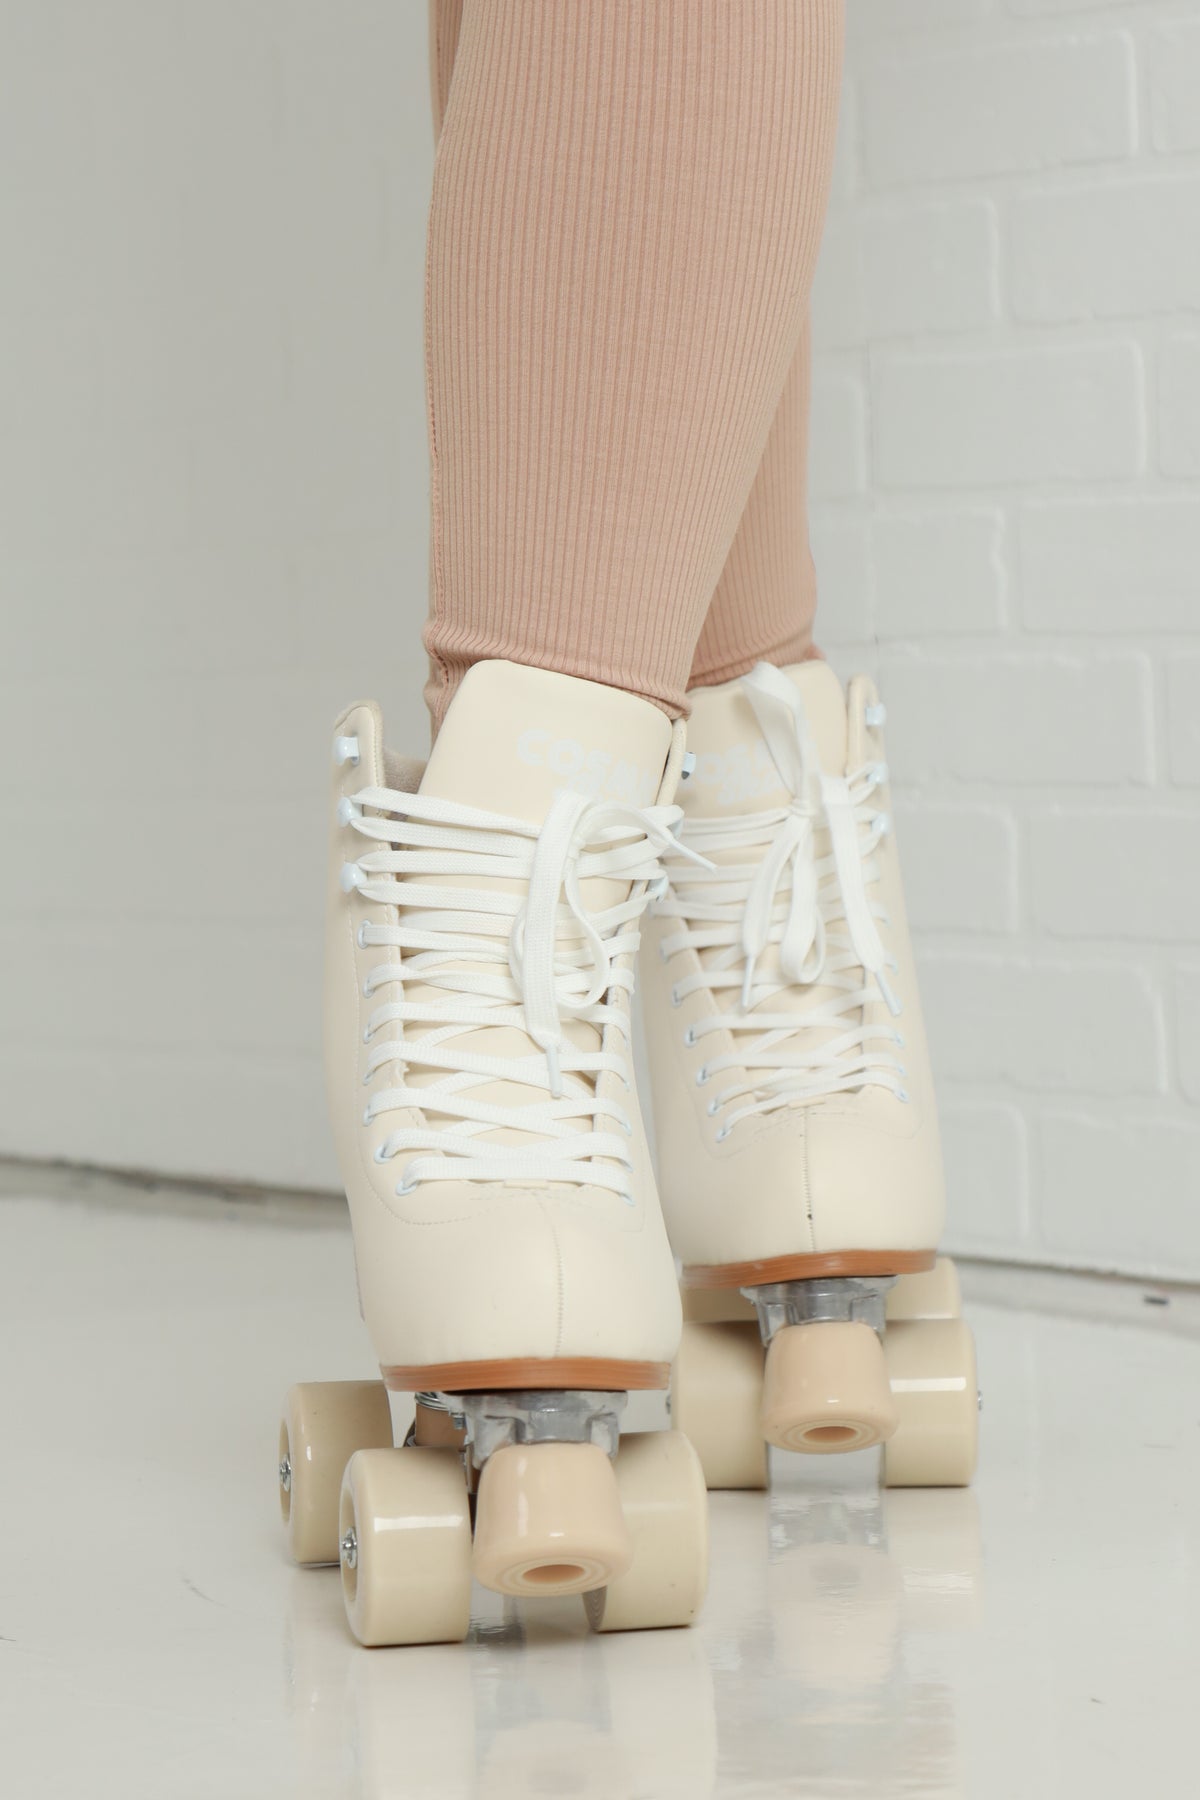 
              Skater Girl Pastel Roller Skates - Butter - Swank A Posh
            